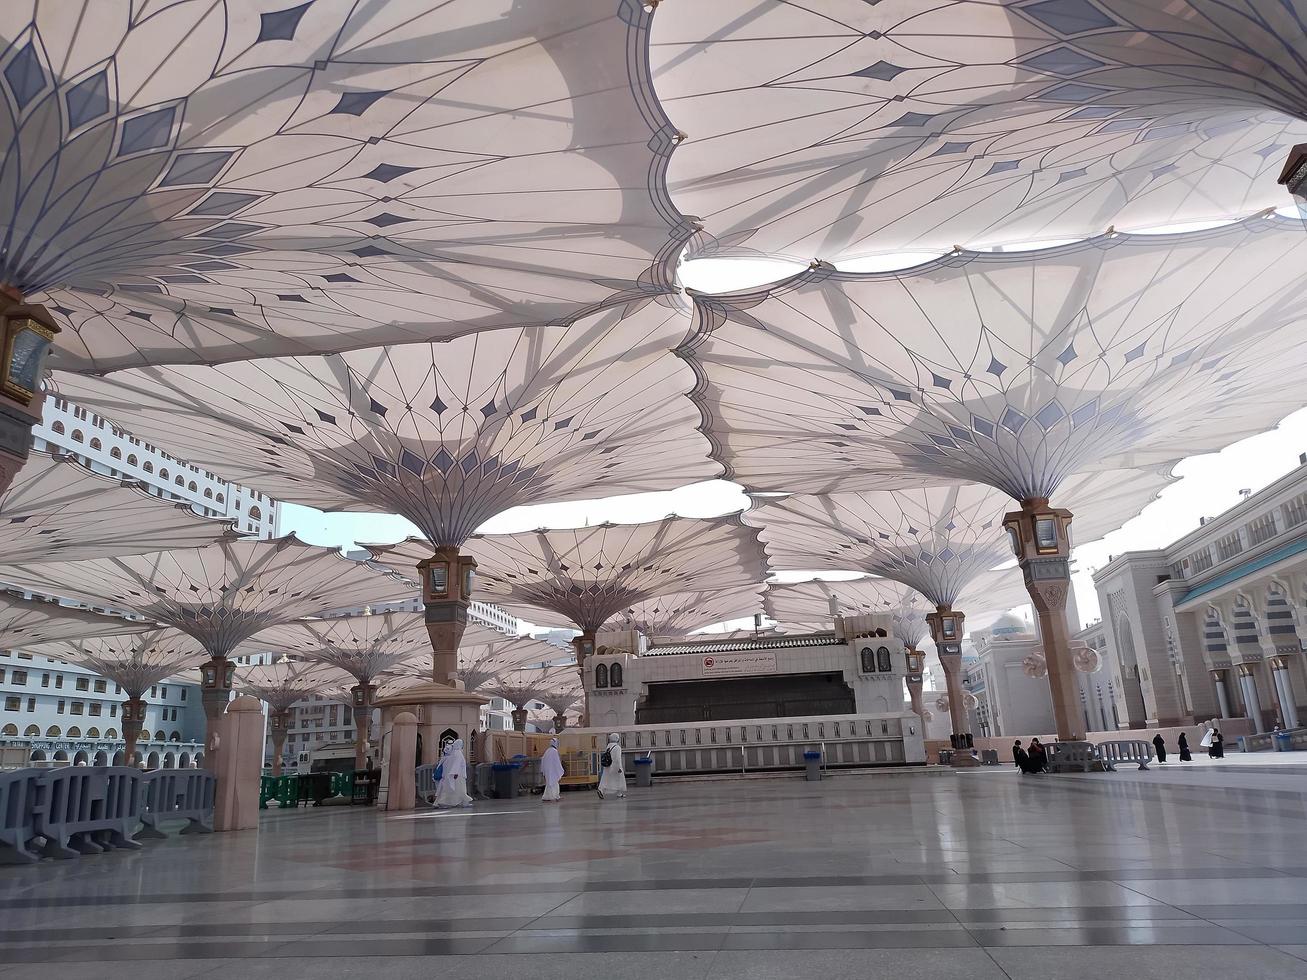 medina, Arabia arabia, 2022 - ombrello costruzione su il piazza di al-masjid an-nabawi o profeta muhammed moschea siamo proteggere persone a partire dal sole a giorno e opera come luci a notte foto